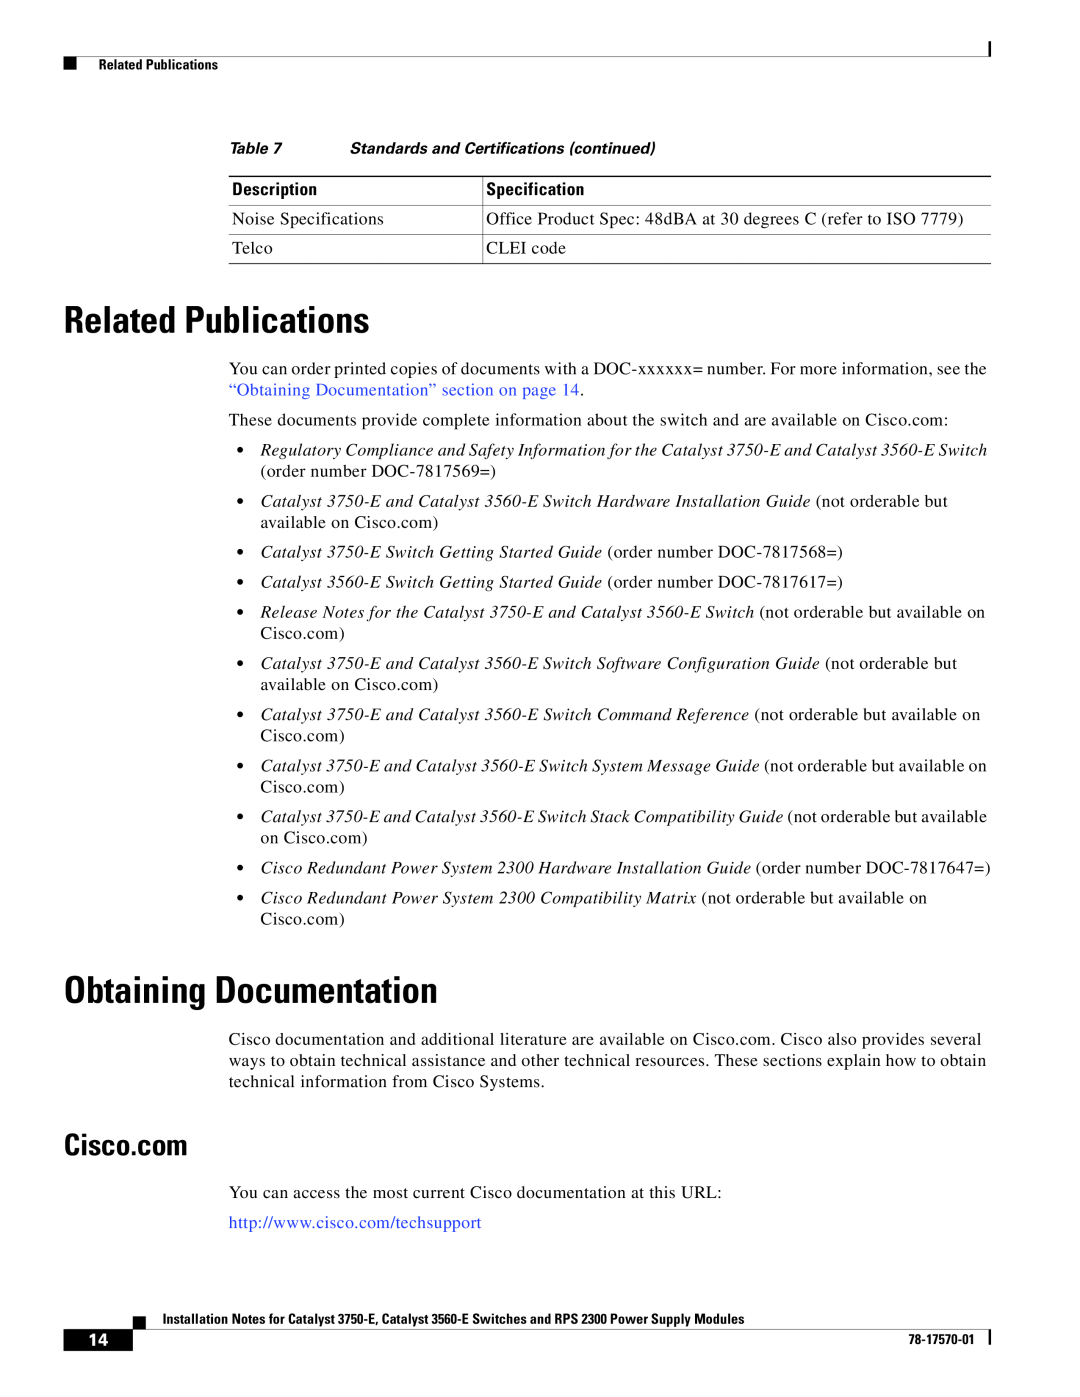 Cisco Systems 3750-E, RPS 2300, 3560-E technical specifications Related Publications, Obtaining Documentation, Cisco.com 